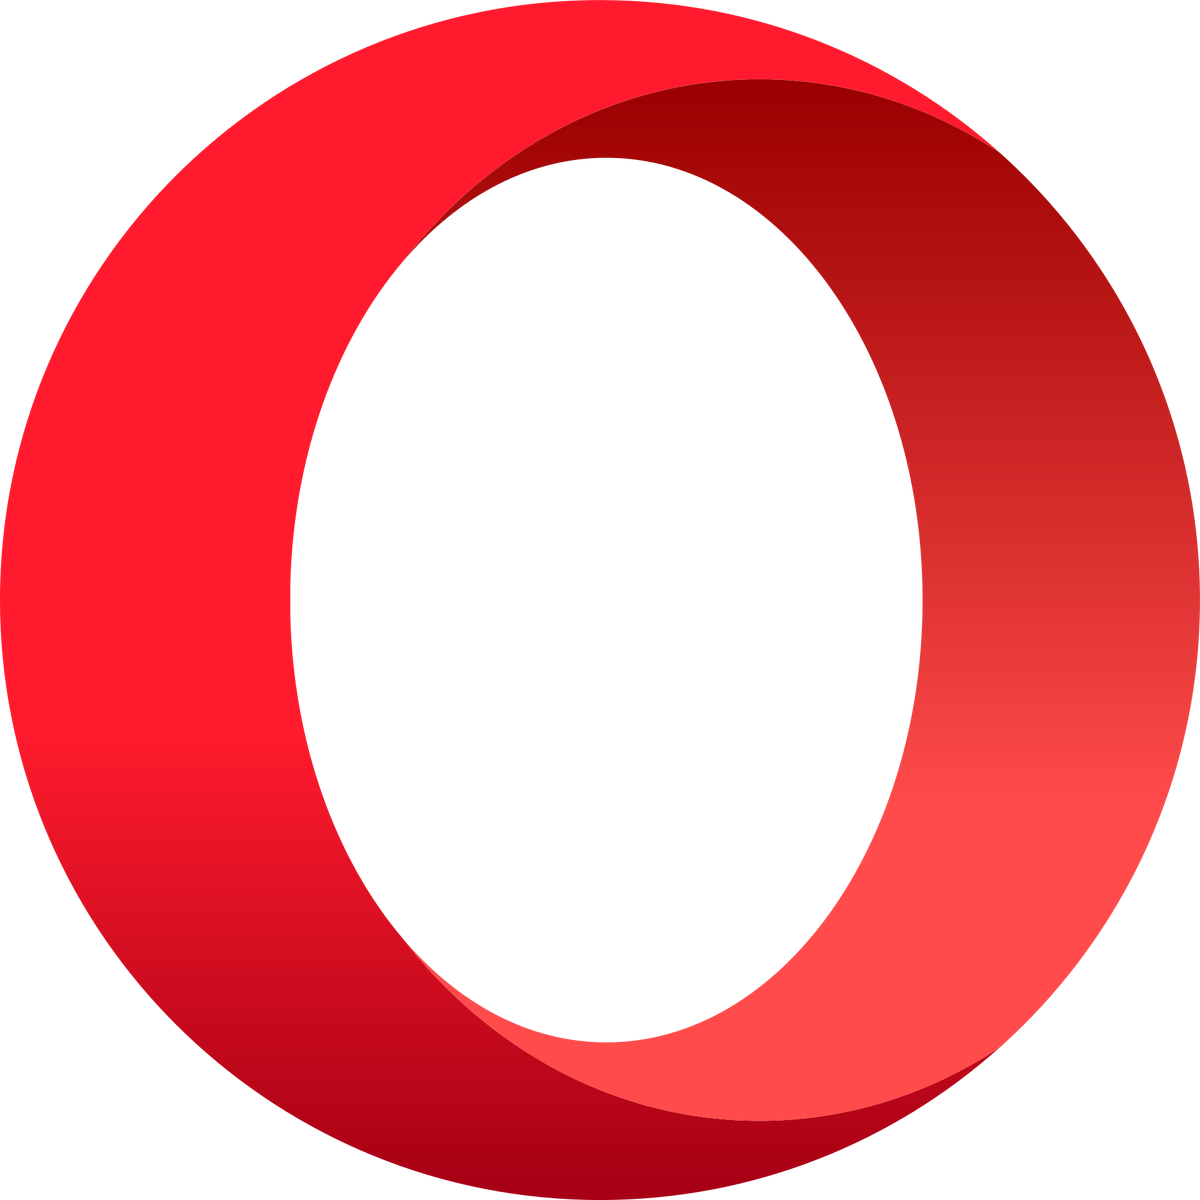 Opera GX, Operius Wiki